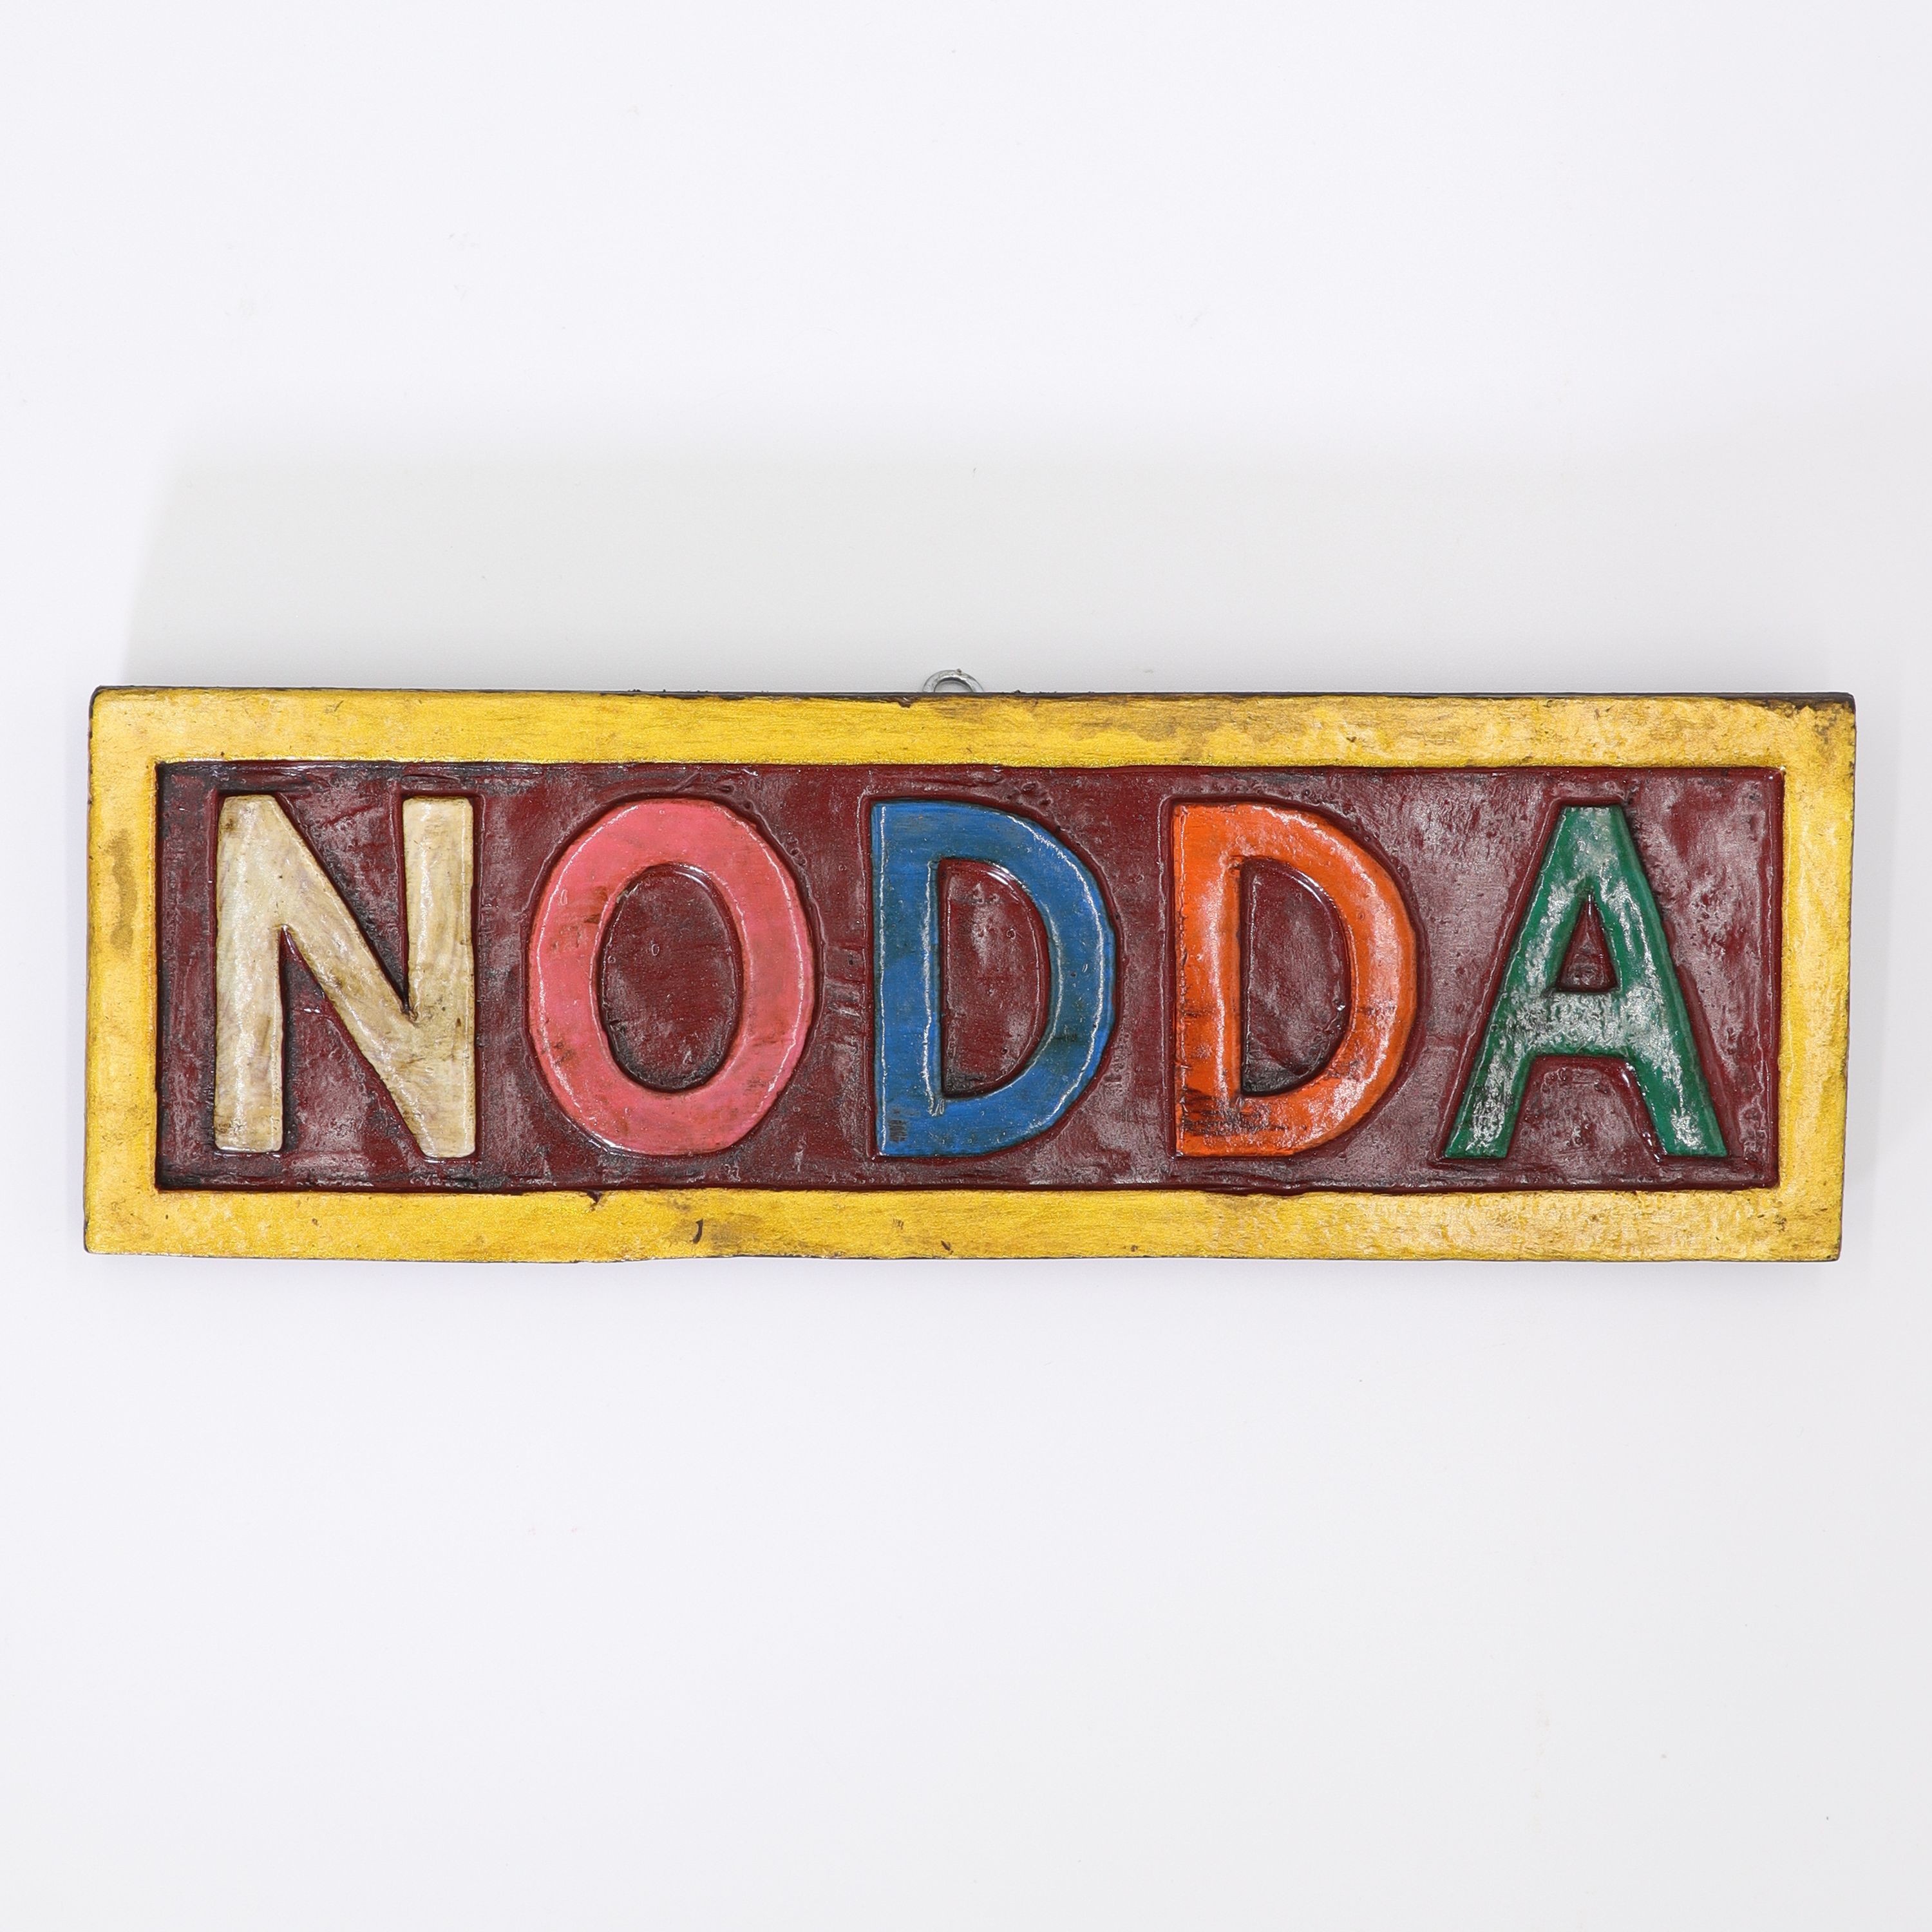 Schild aus Holz - Nodda - buntes Wandbild von Hand geschnitzt - ca. 8 x 24 cm - wundervolle Wanddekoration in traditionell nepalesischen Farben - echte Handarbeit und fair gehandelt aus Nepal